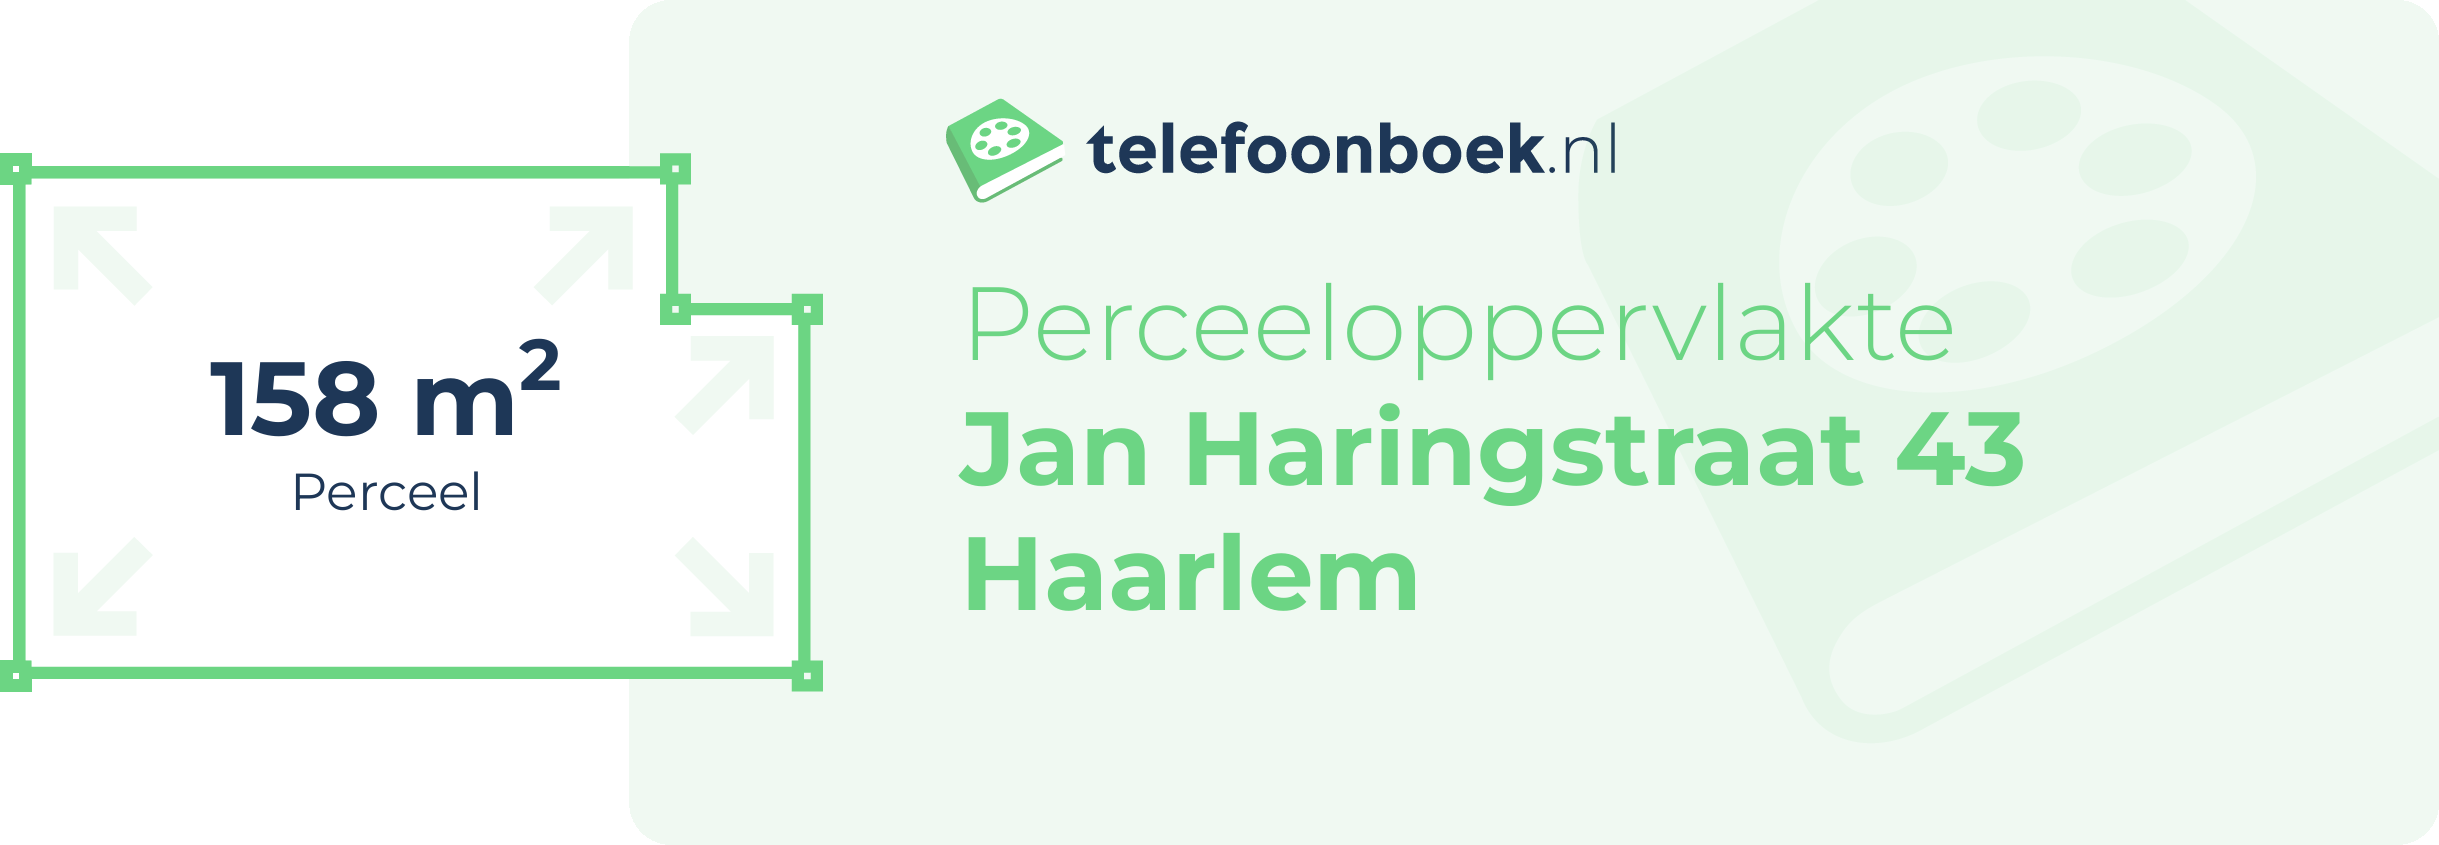 Perceeloppervlakte Jan Haringstraat 43 Haarlem